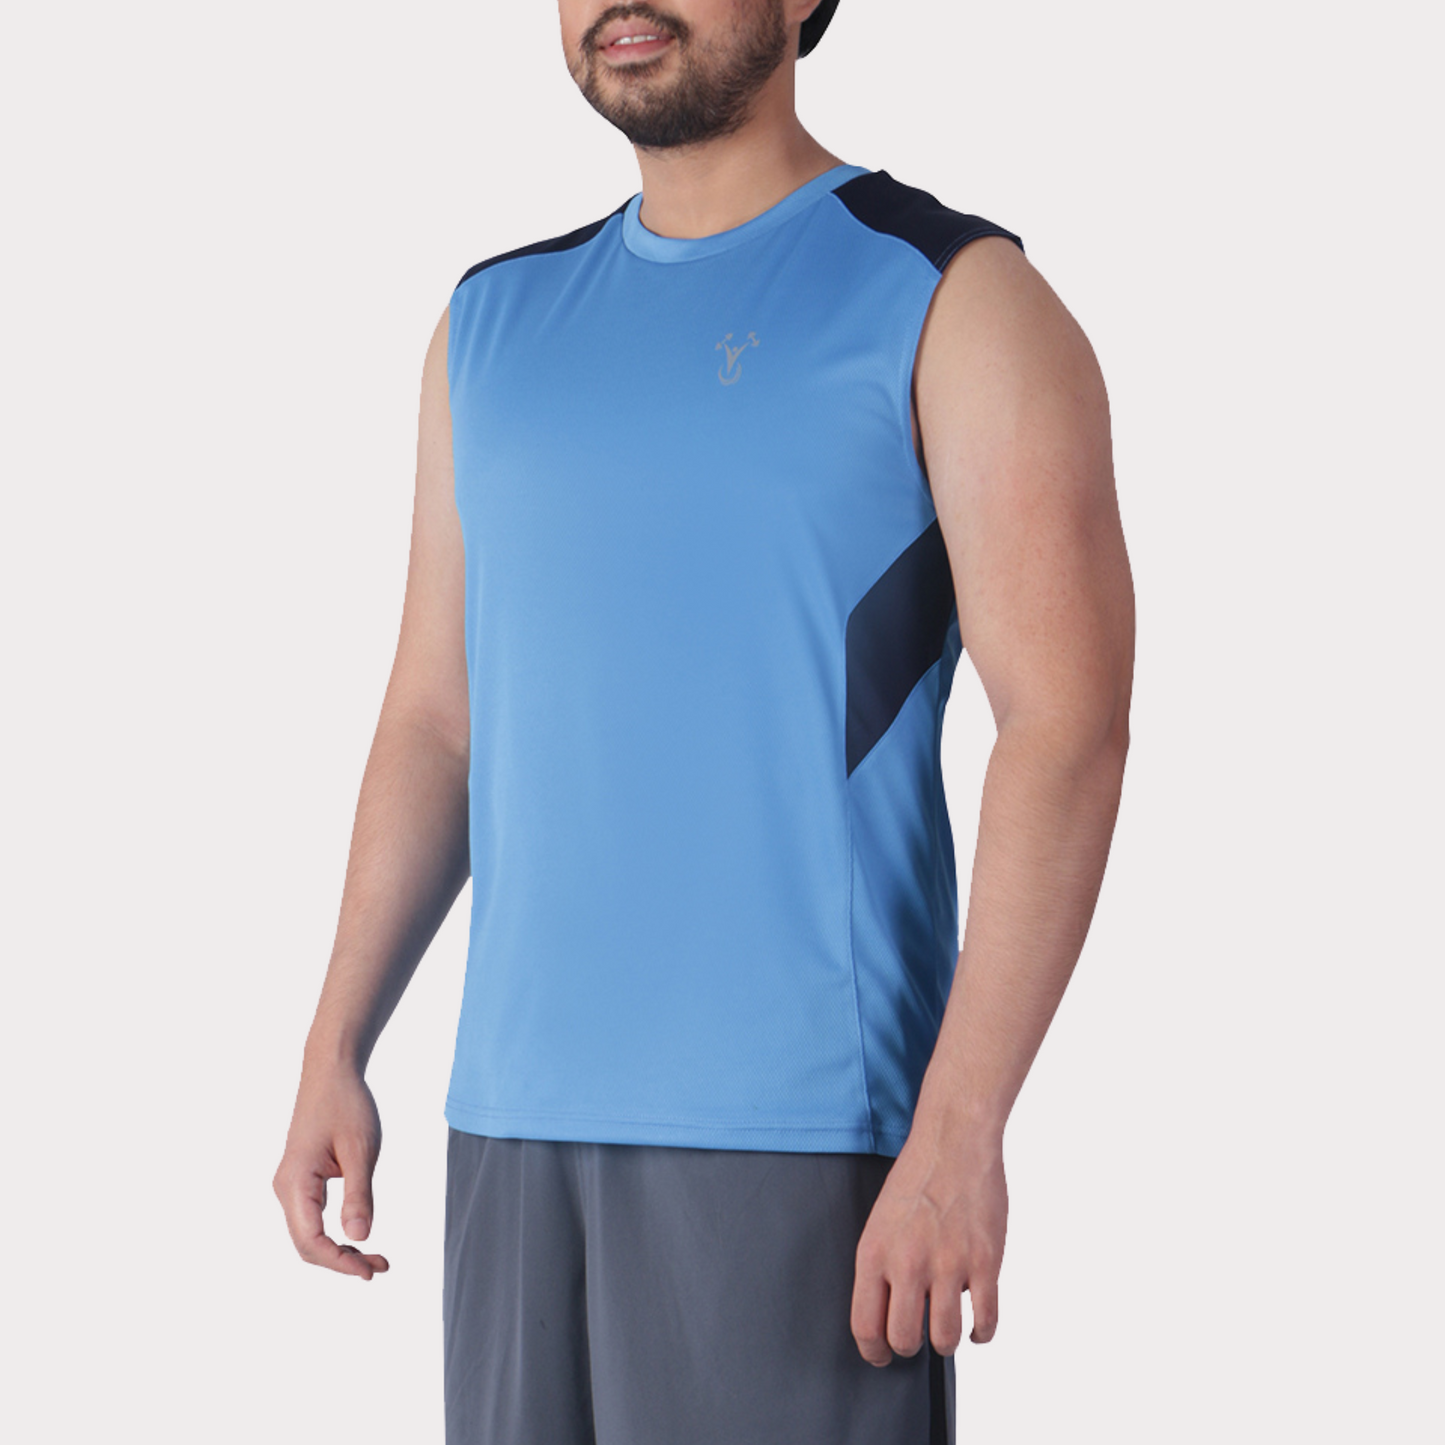 Sleeveless & Tank Activewear / Sportswear - Men's Wide Shoulder Muscle Tee - S /Sports Blue - Outperformer